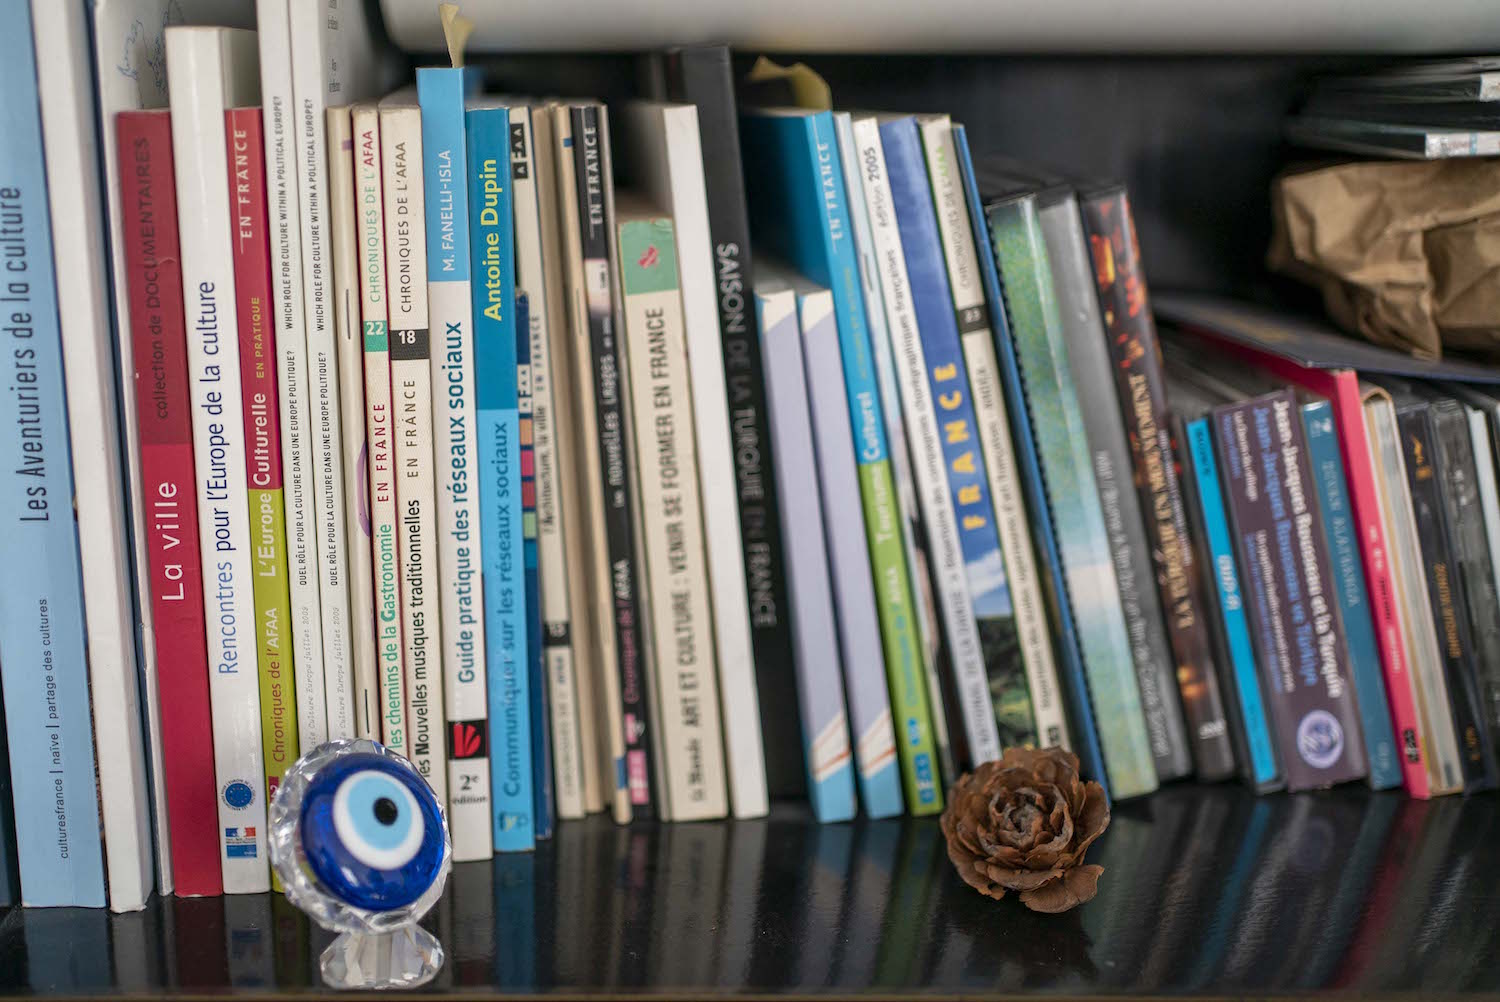 Sa bibliothèque est très fournie, mais il a pris soin d’y poser aussi un “nazar boncuk” (une amulette contre le mauvais œil) qui, en Turquie, est synonyme de chance. 